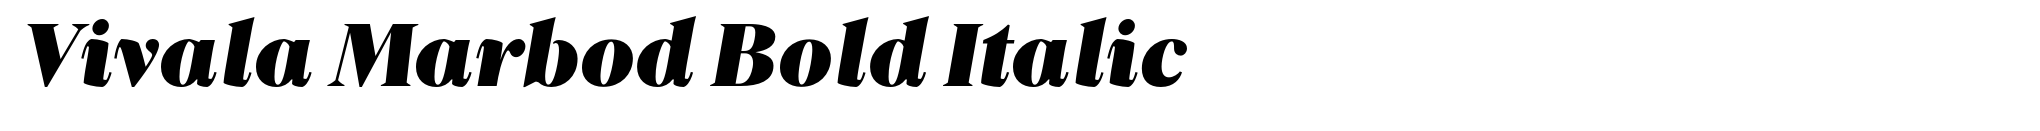 Vivala Marbod Bold Italic image